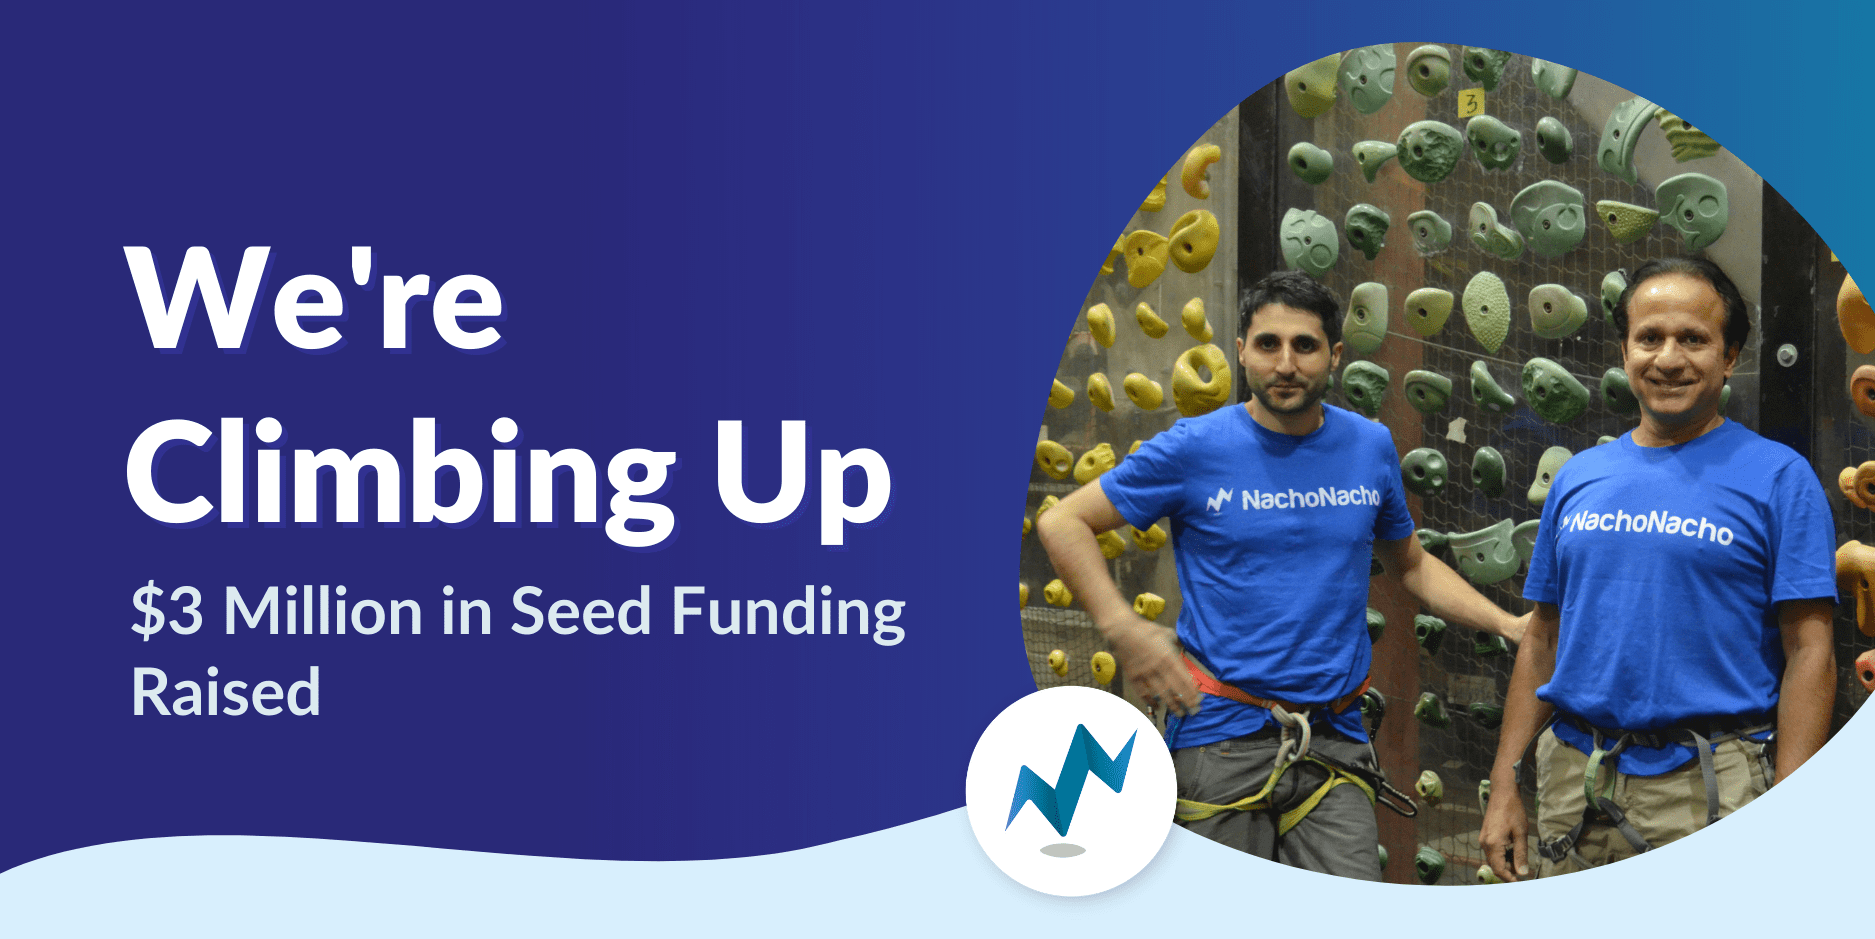 NachoNacho Raises $3 Million in Seed Funding